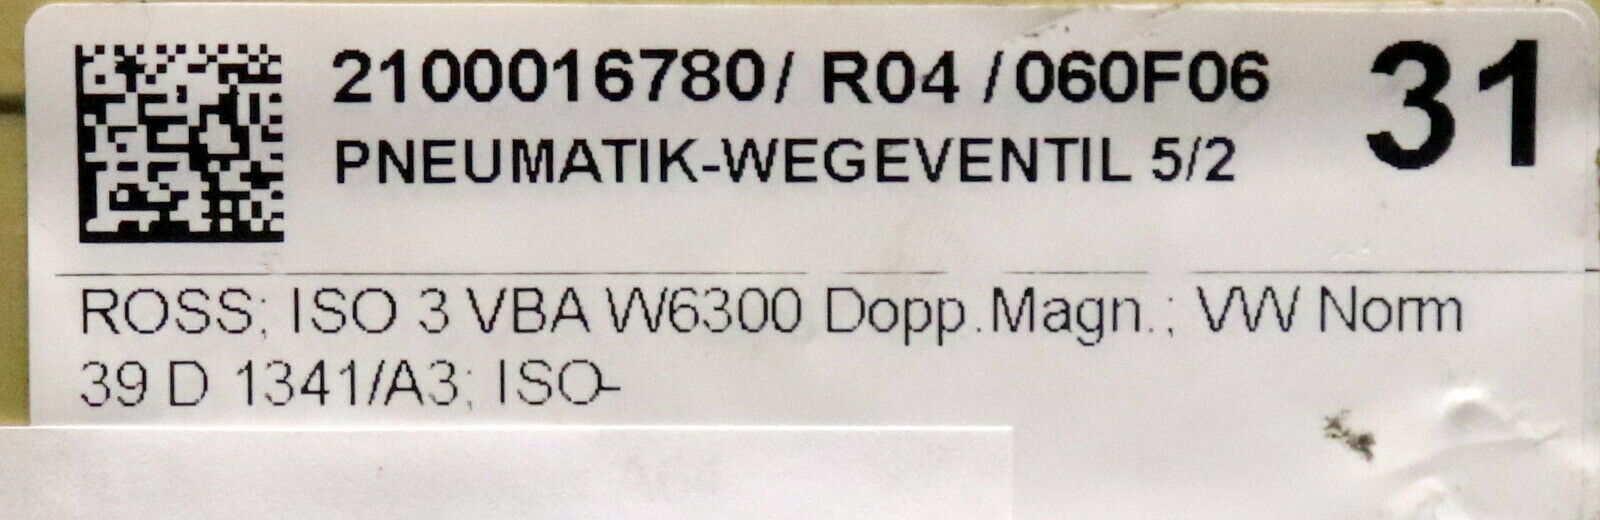 ROSS 5/2-Wegeventil Pneumatik W6300 nach VW Norm 39 D1341/A3 ISO 3 VBA